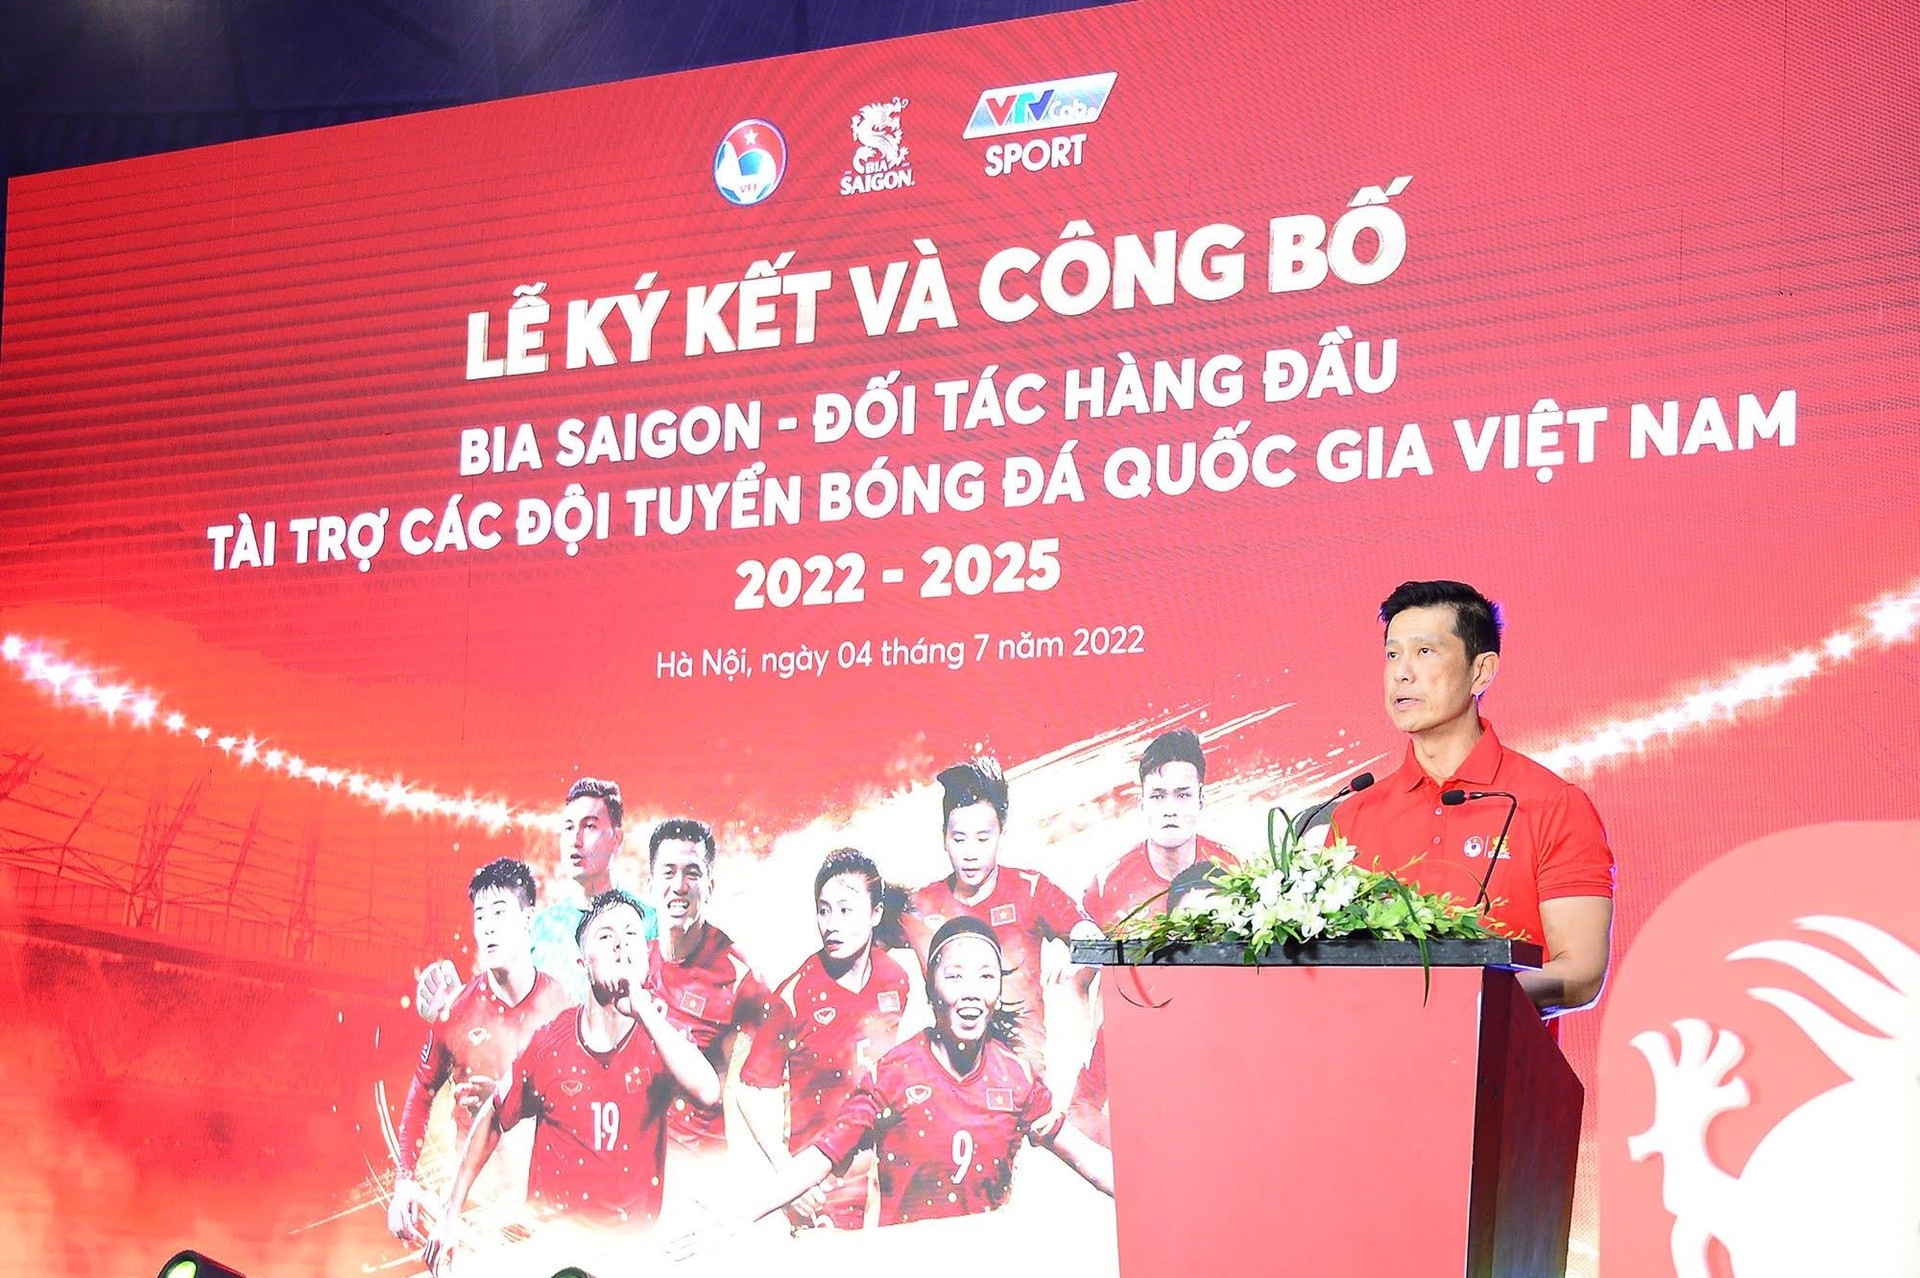 Các đội tuyển bóng đá Việt Nam nhận thêm tài trợ lớn - 2